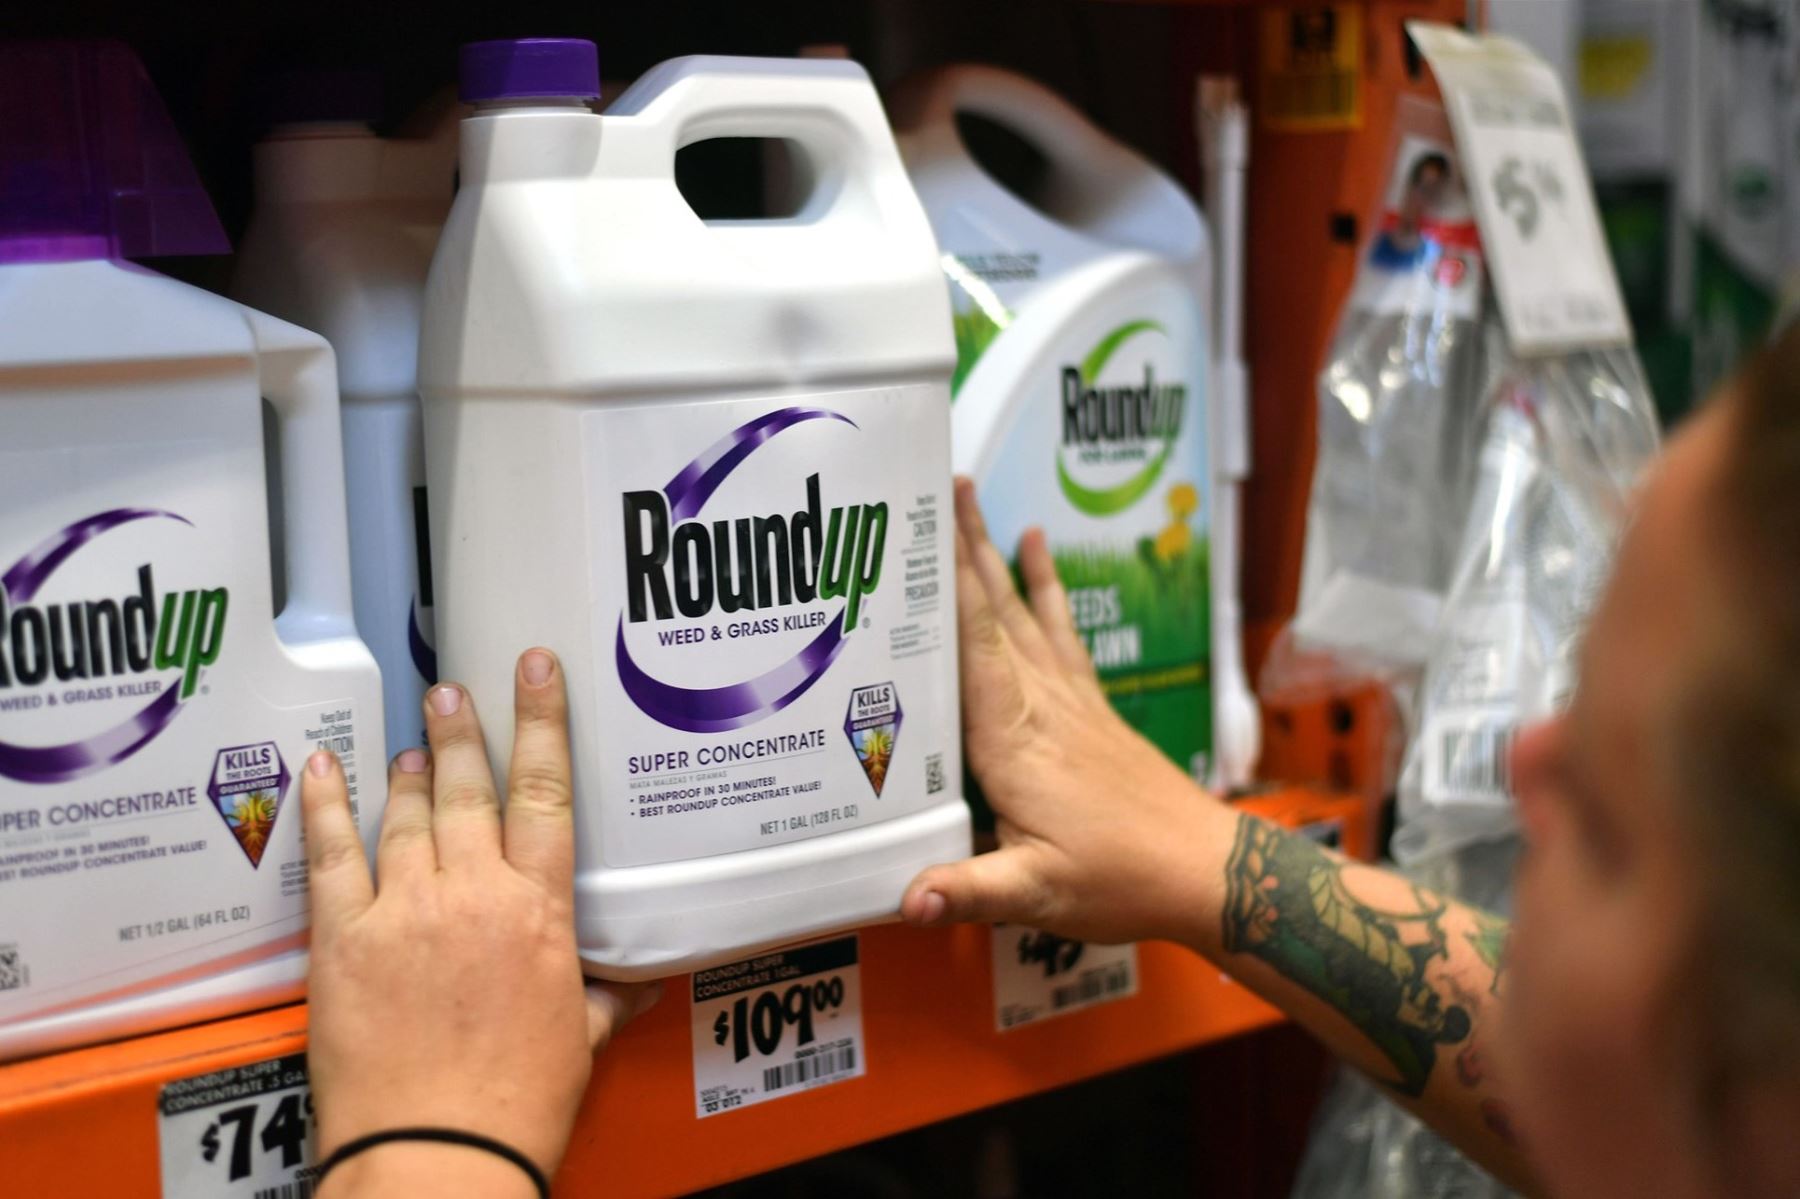 El herbicida Roundup contiene el pesticida glifosato. Crédito: Josh Edelson / AFP - Getty Images